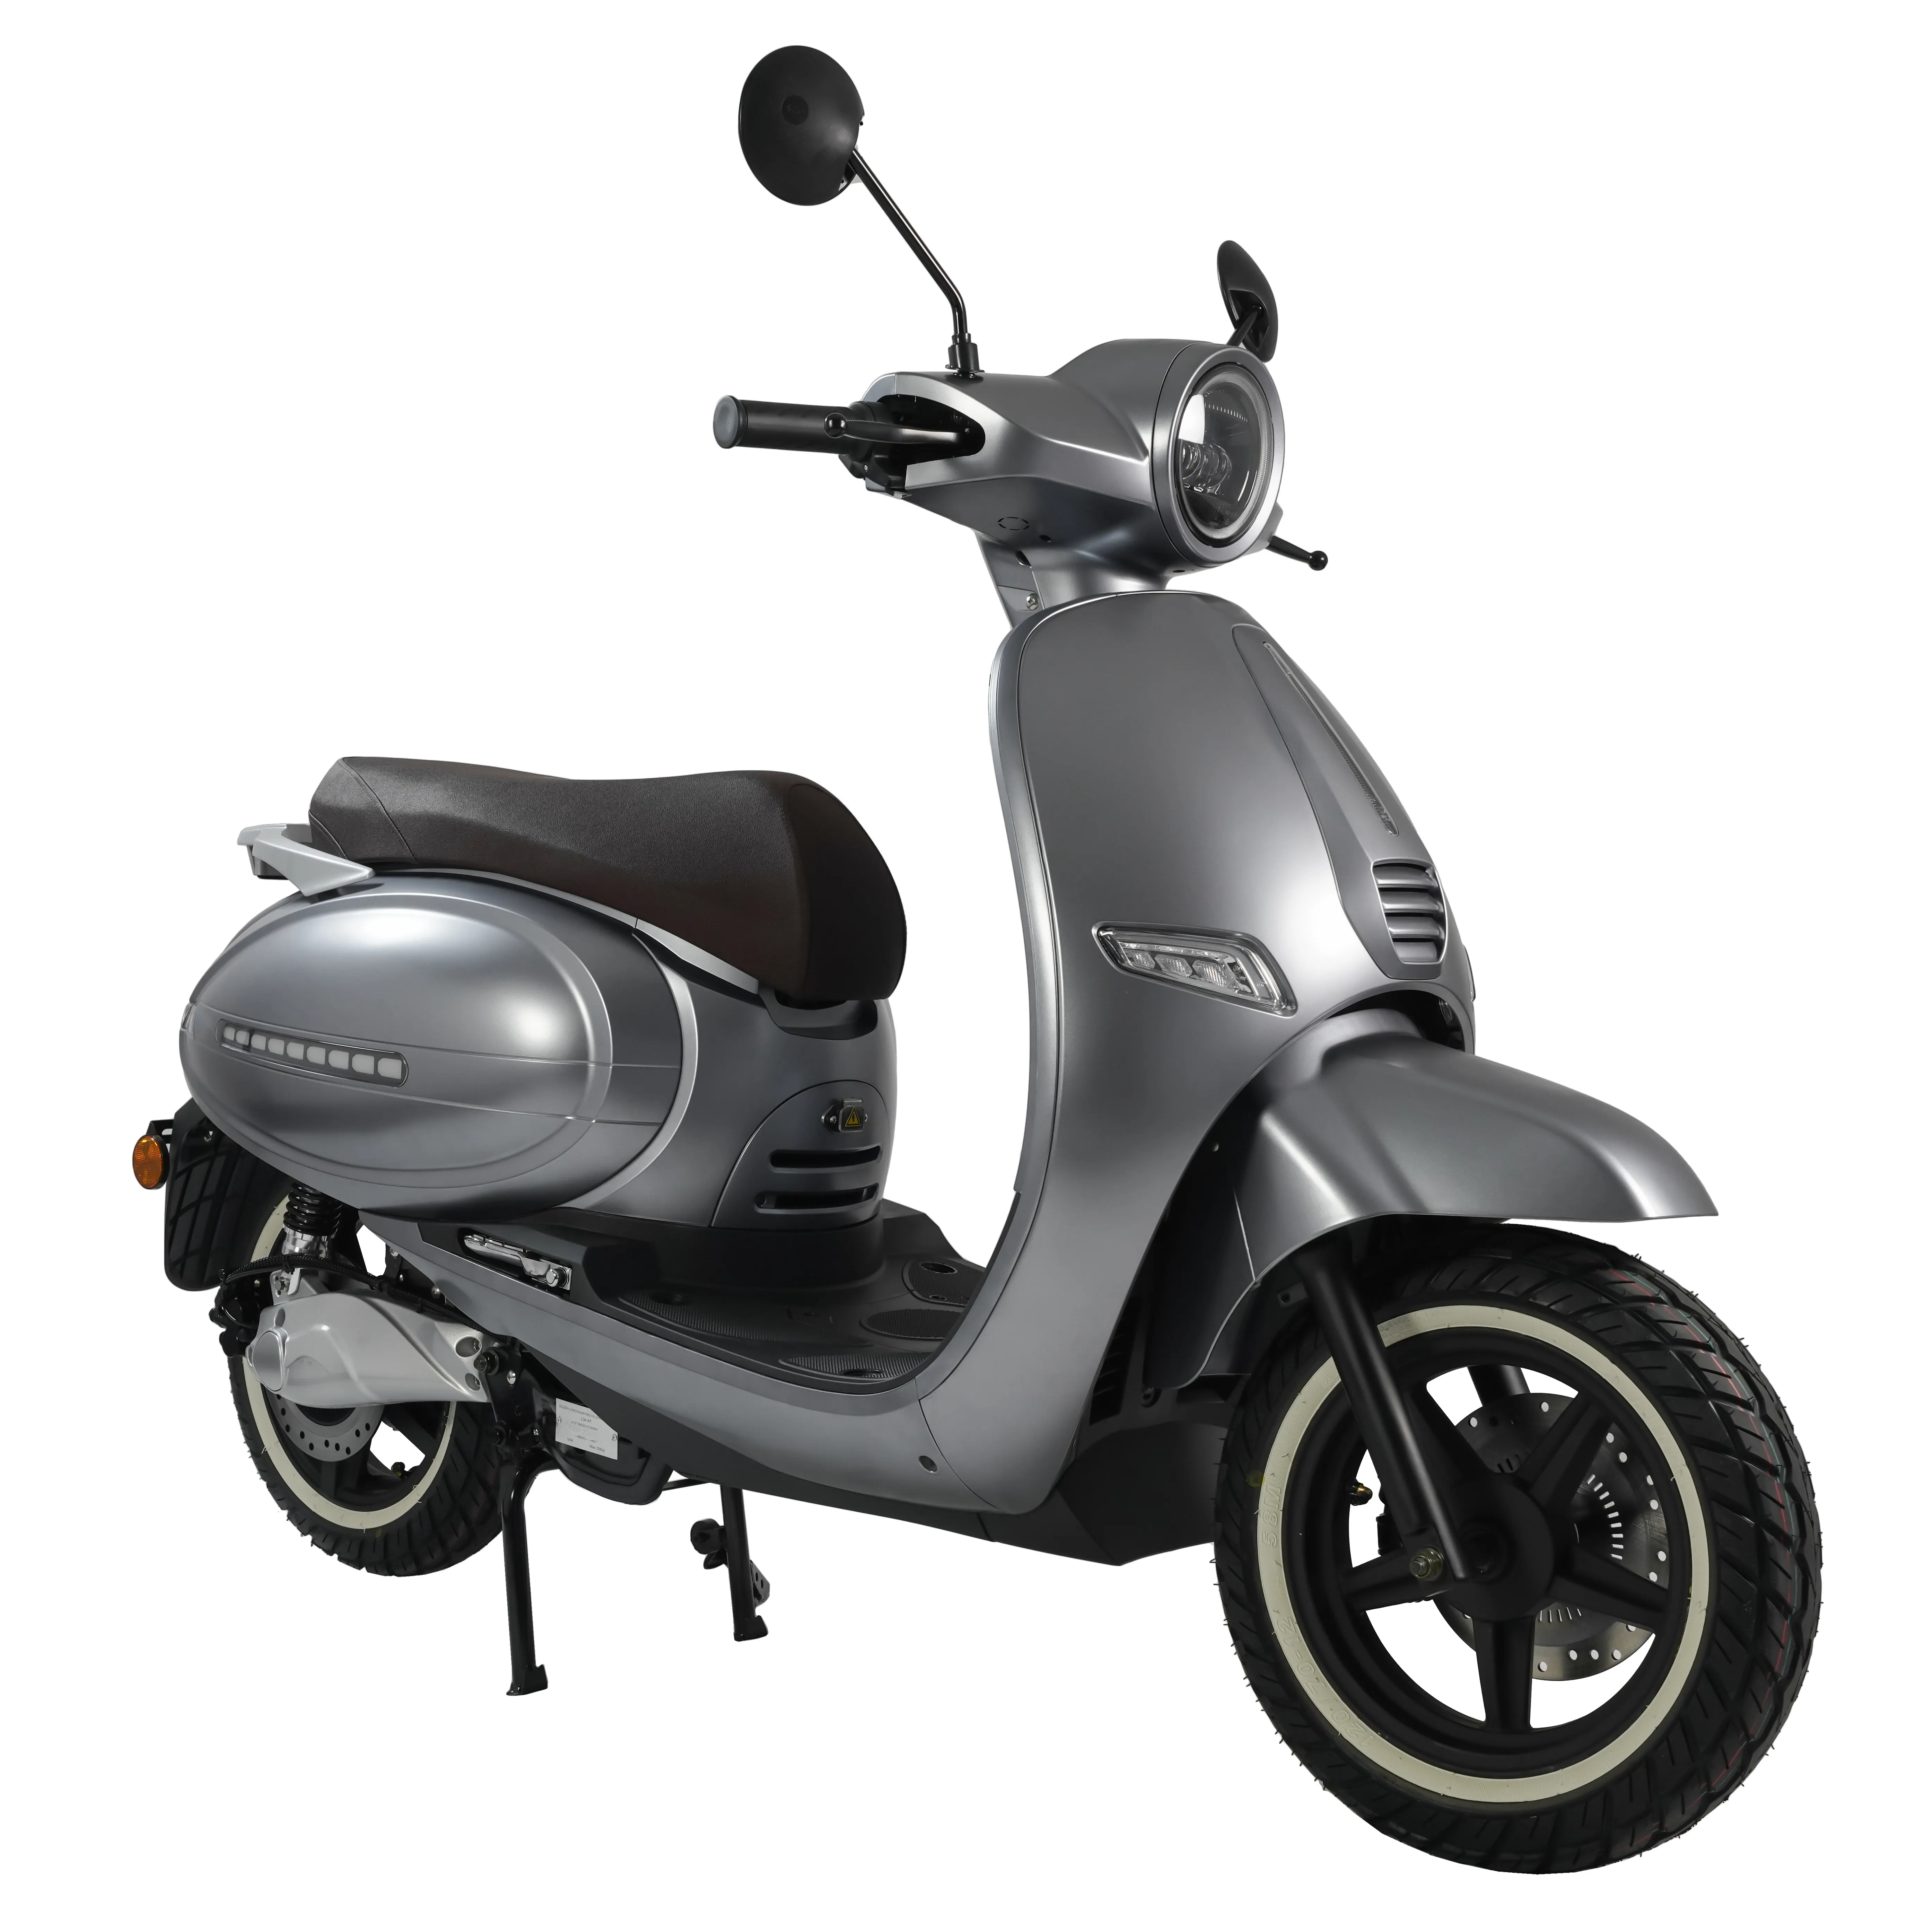 Novo bom vendedor v espa modelo clássico 5000w scooter elétrico motocicleta bateria de lítio estrada CEE CNIT legal 90 km/h